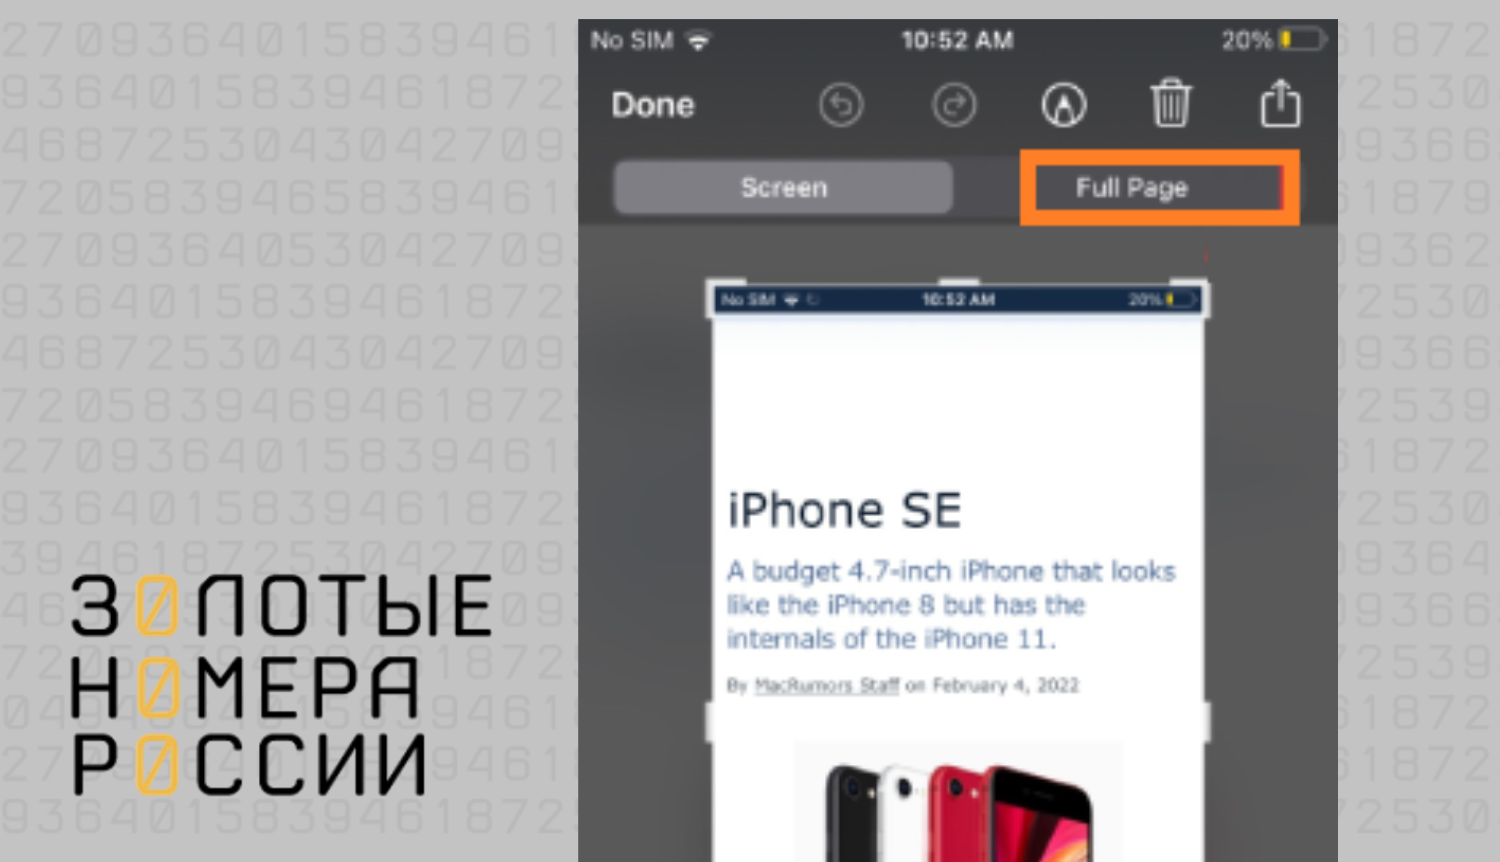 Скриншоты на iPhone: новые лайфхаки от ТопНомер.ру